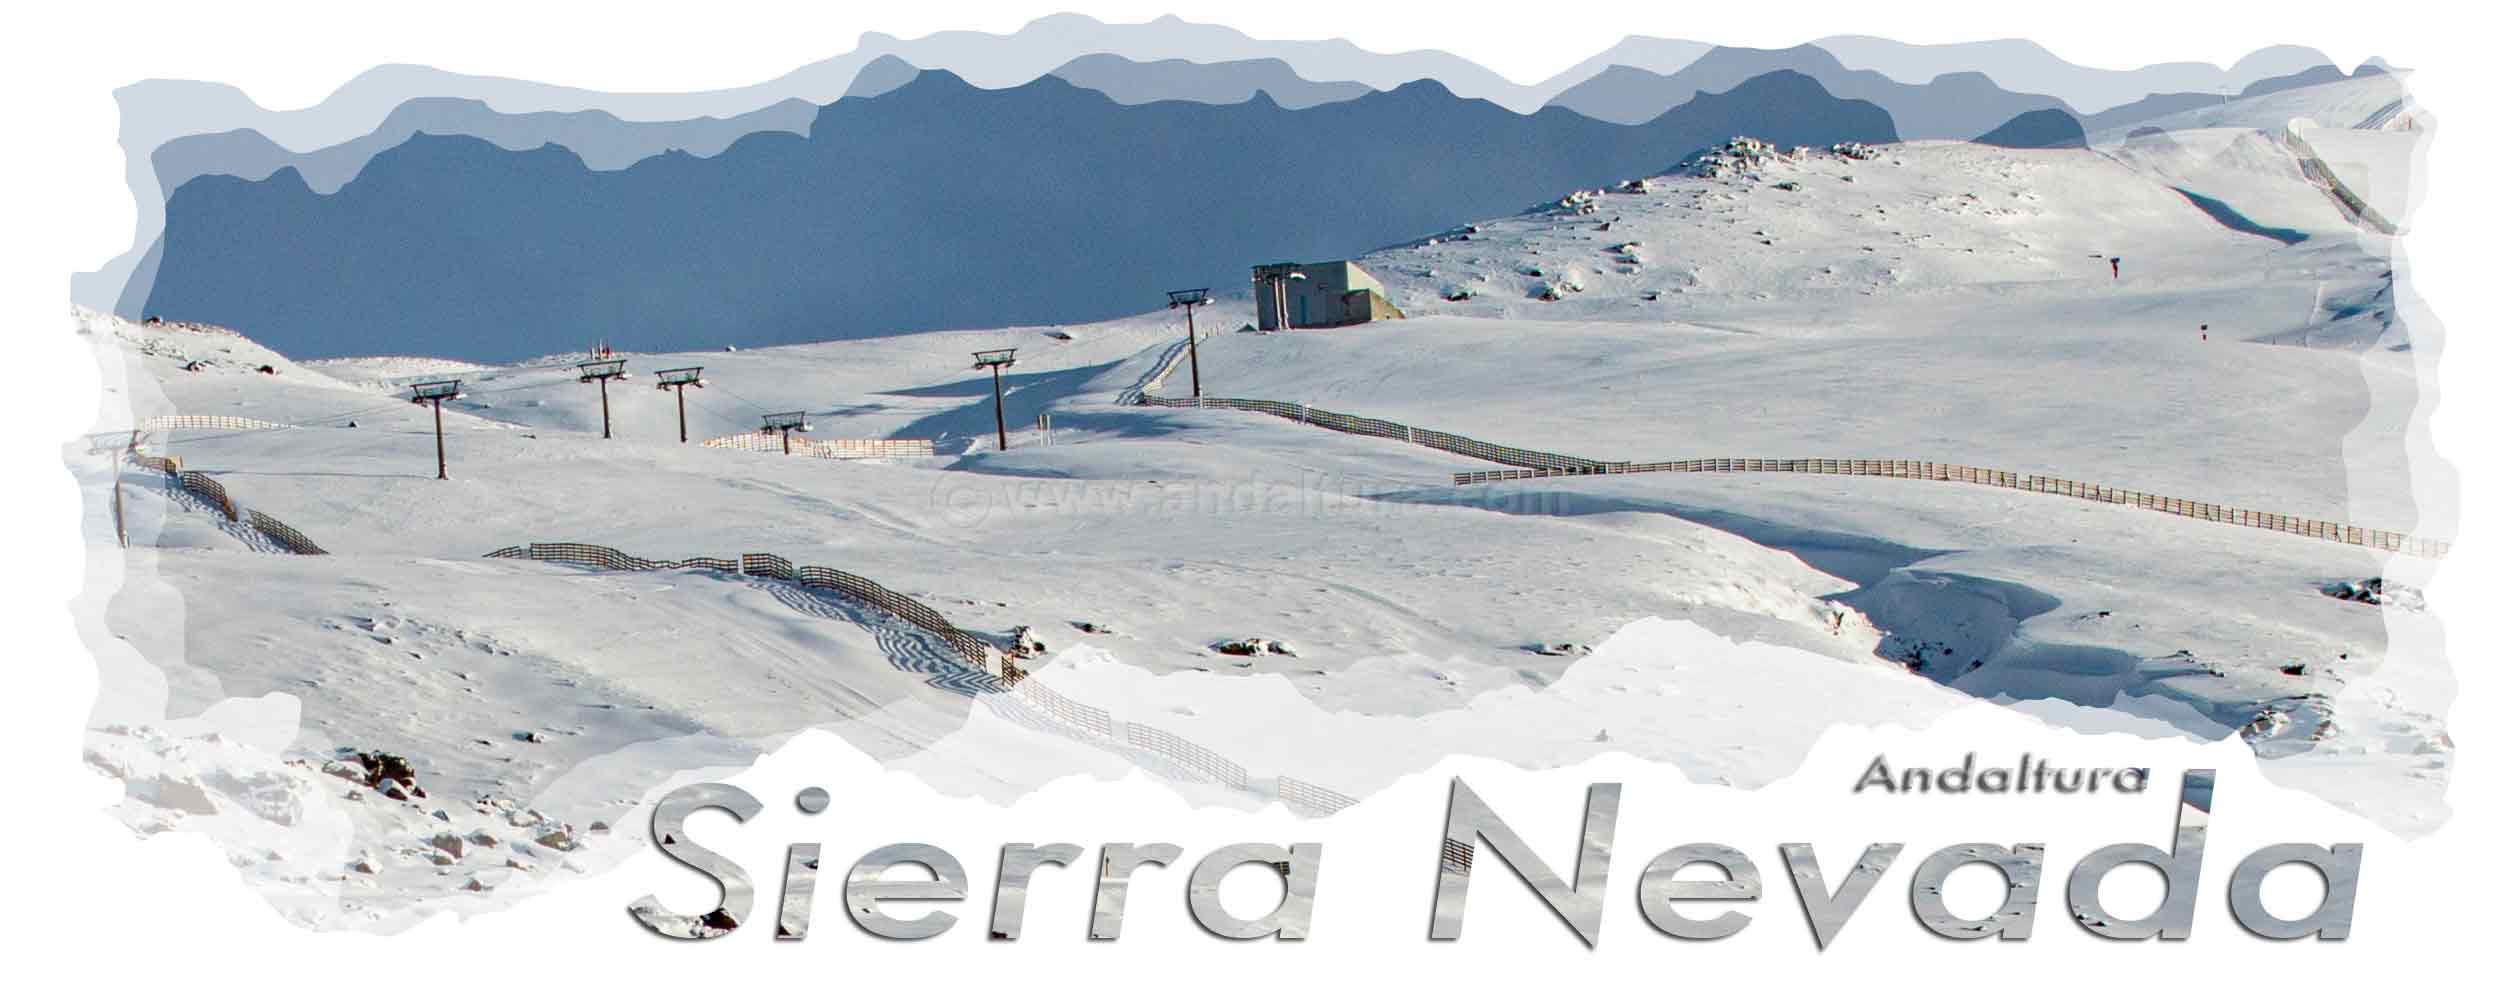 Telesilla Virgen de las Nieves y pistas - Área Cauchiles - Parador Estación de Esquí Sierra Nevada